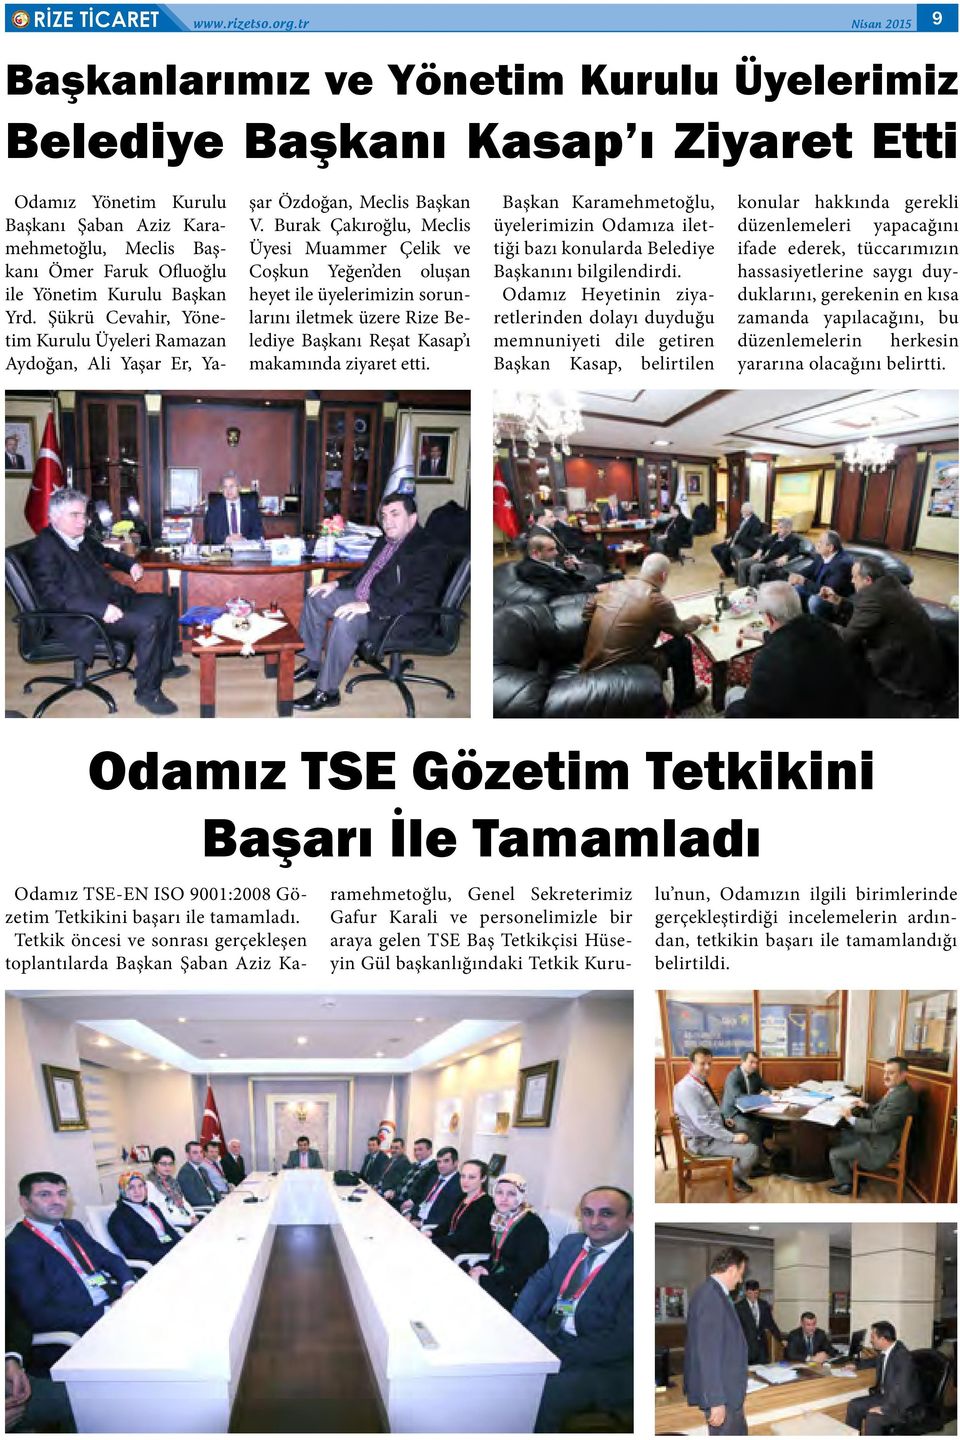 Burak Çakıroğlu, Meclis Üyesi Muammer Çelik ve Coşkun Yeğen den oluşan heyet ile üyelerimizin sorunlarını iletmek üzere Rize Belediye Başkanı Reşat Kasap ı makamında ziyaret etti.